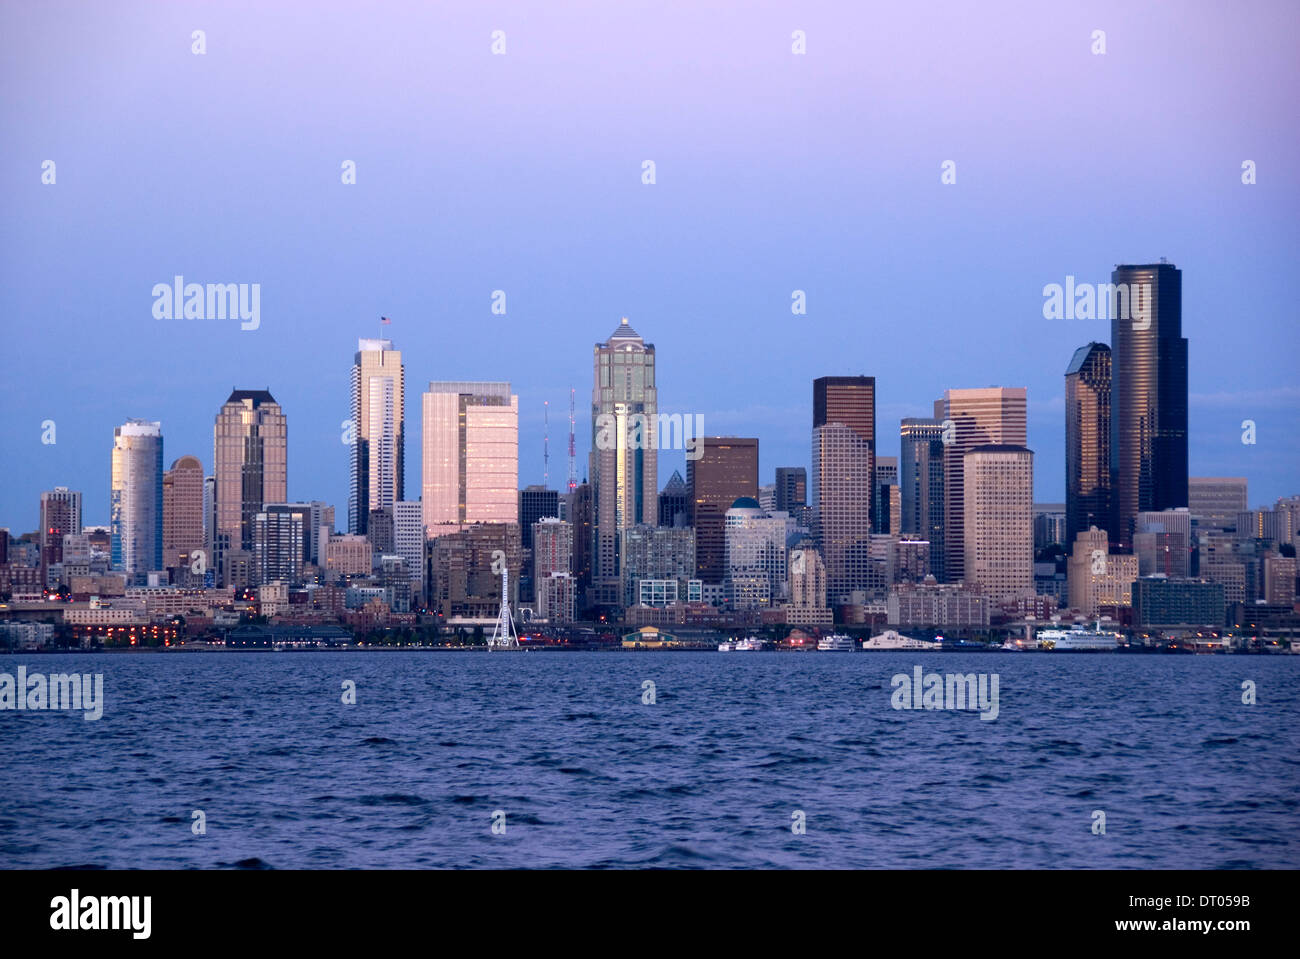 El centro de Seattle rascacielos vistos a través de la Bahía Elliot desde Alki al atardecer, al oeste de Seattle, EE.UU. Foto de stock